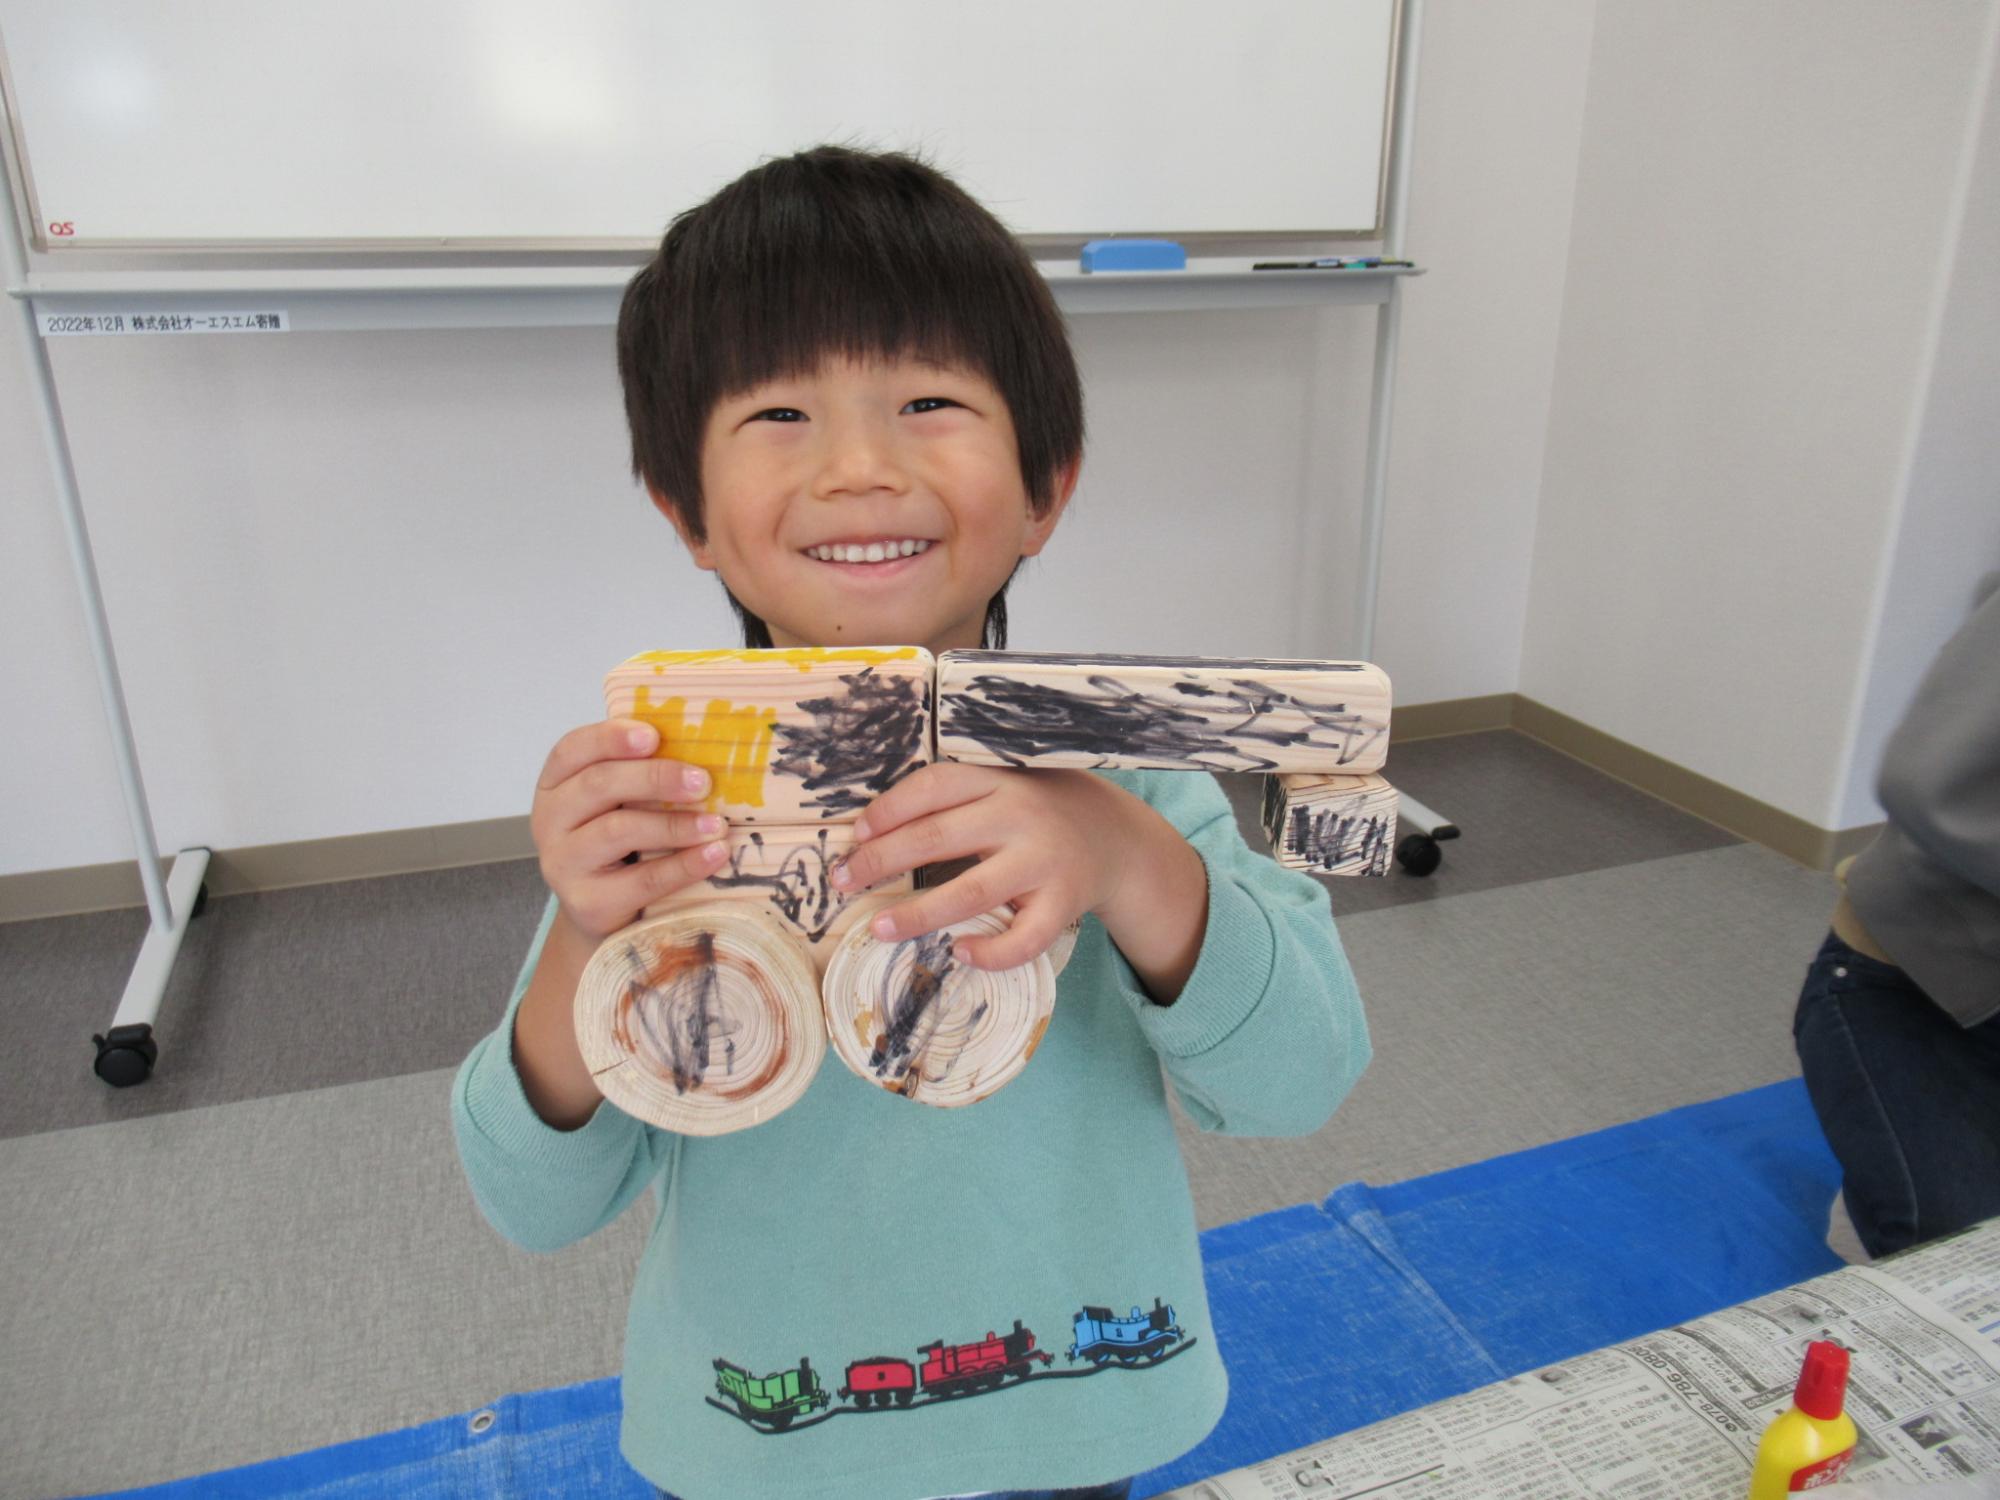 丸や四角の木の板を組み合わせて昆虫の形にした作品を子どもが見せている写真